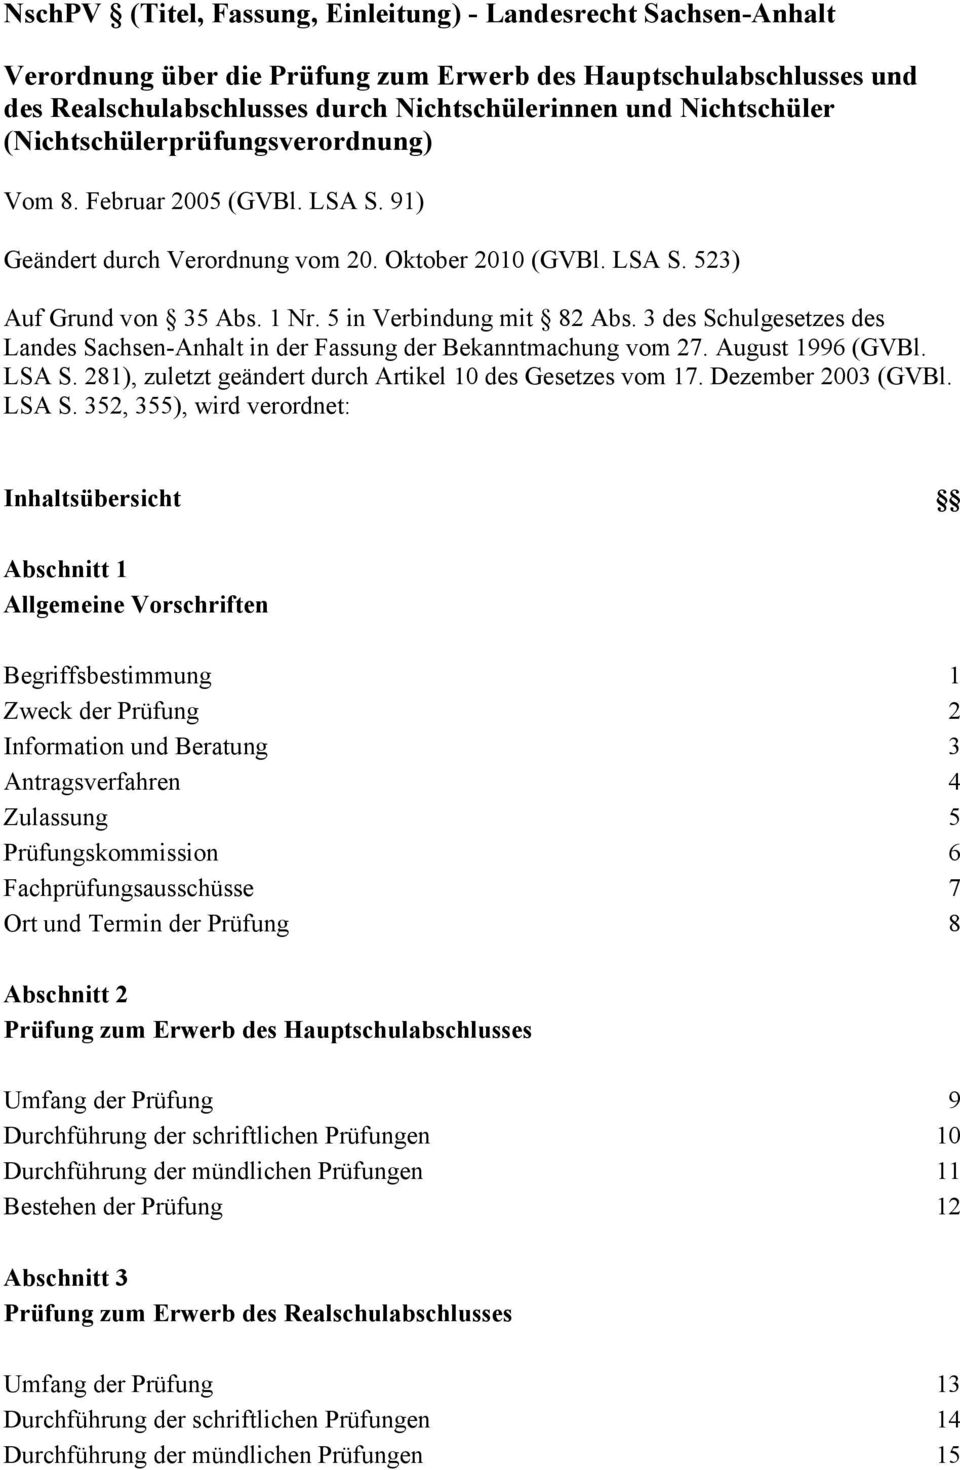 3 des Schulgesetzes des Landes Sachsen-Anhalt in der Fassung der Bekanntmachung vom 27. August 1996 (GVBl. LSA S. 281), zuletzt geändert durch Artikel 10 des Gesetzes vom 17. Dezember 2003 (GVBl.